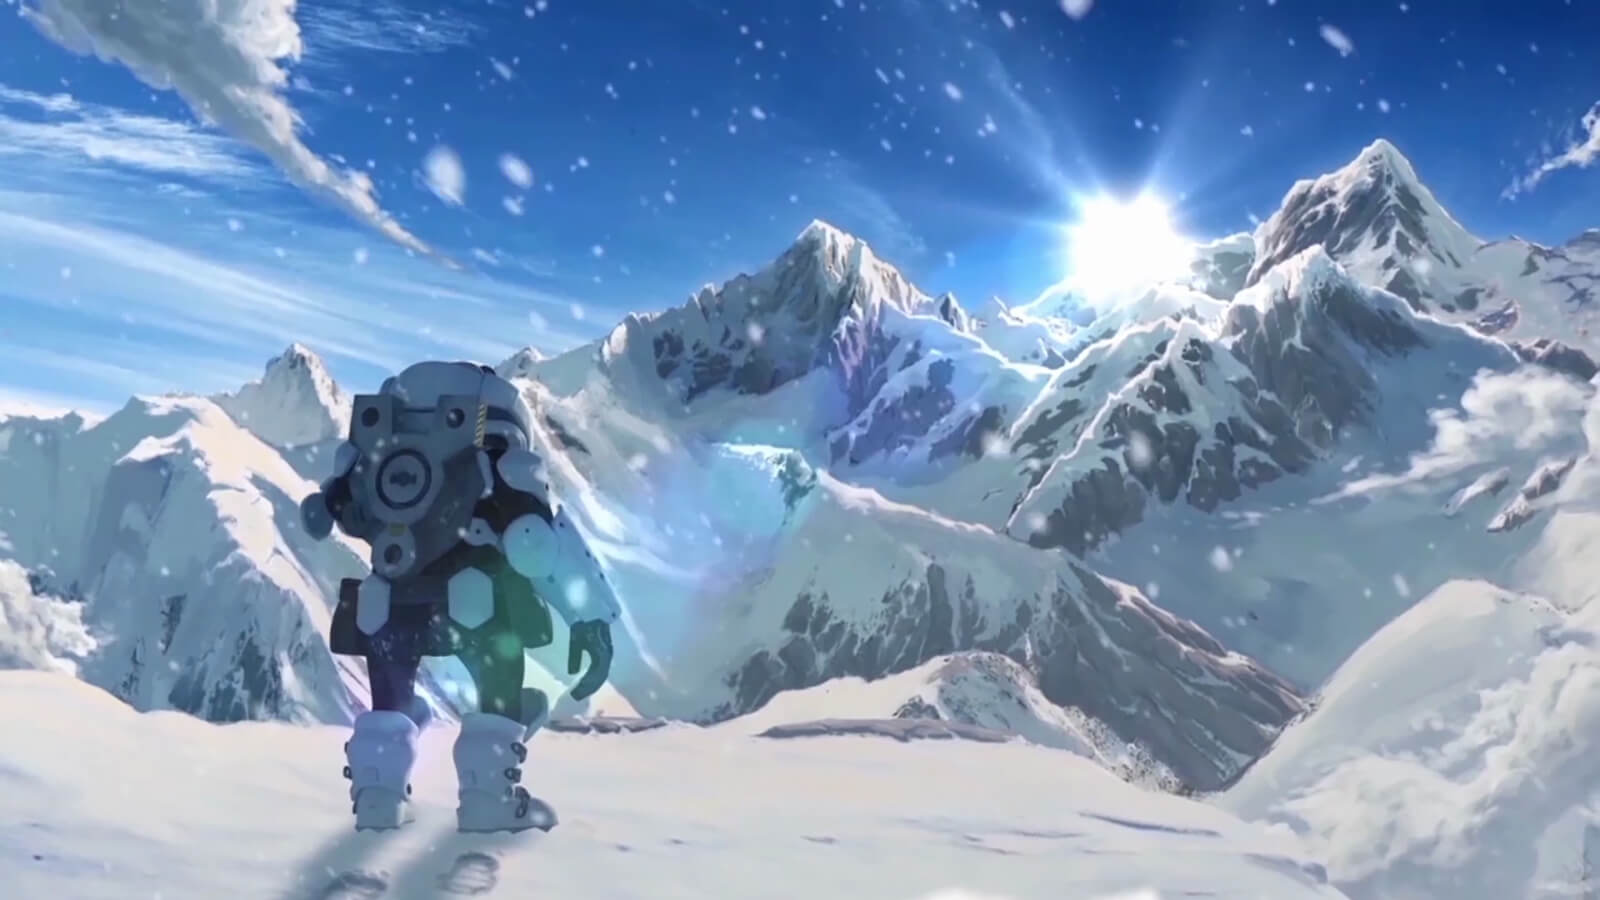 Un hombre de armadura futurista mira al sol nacer entre altos picos desde lo alto de una montaña nevada.